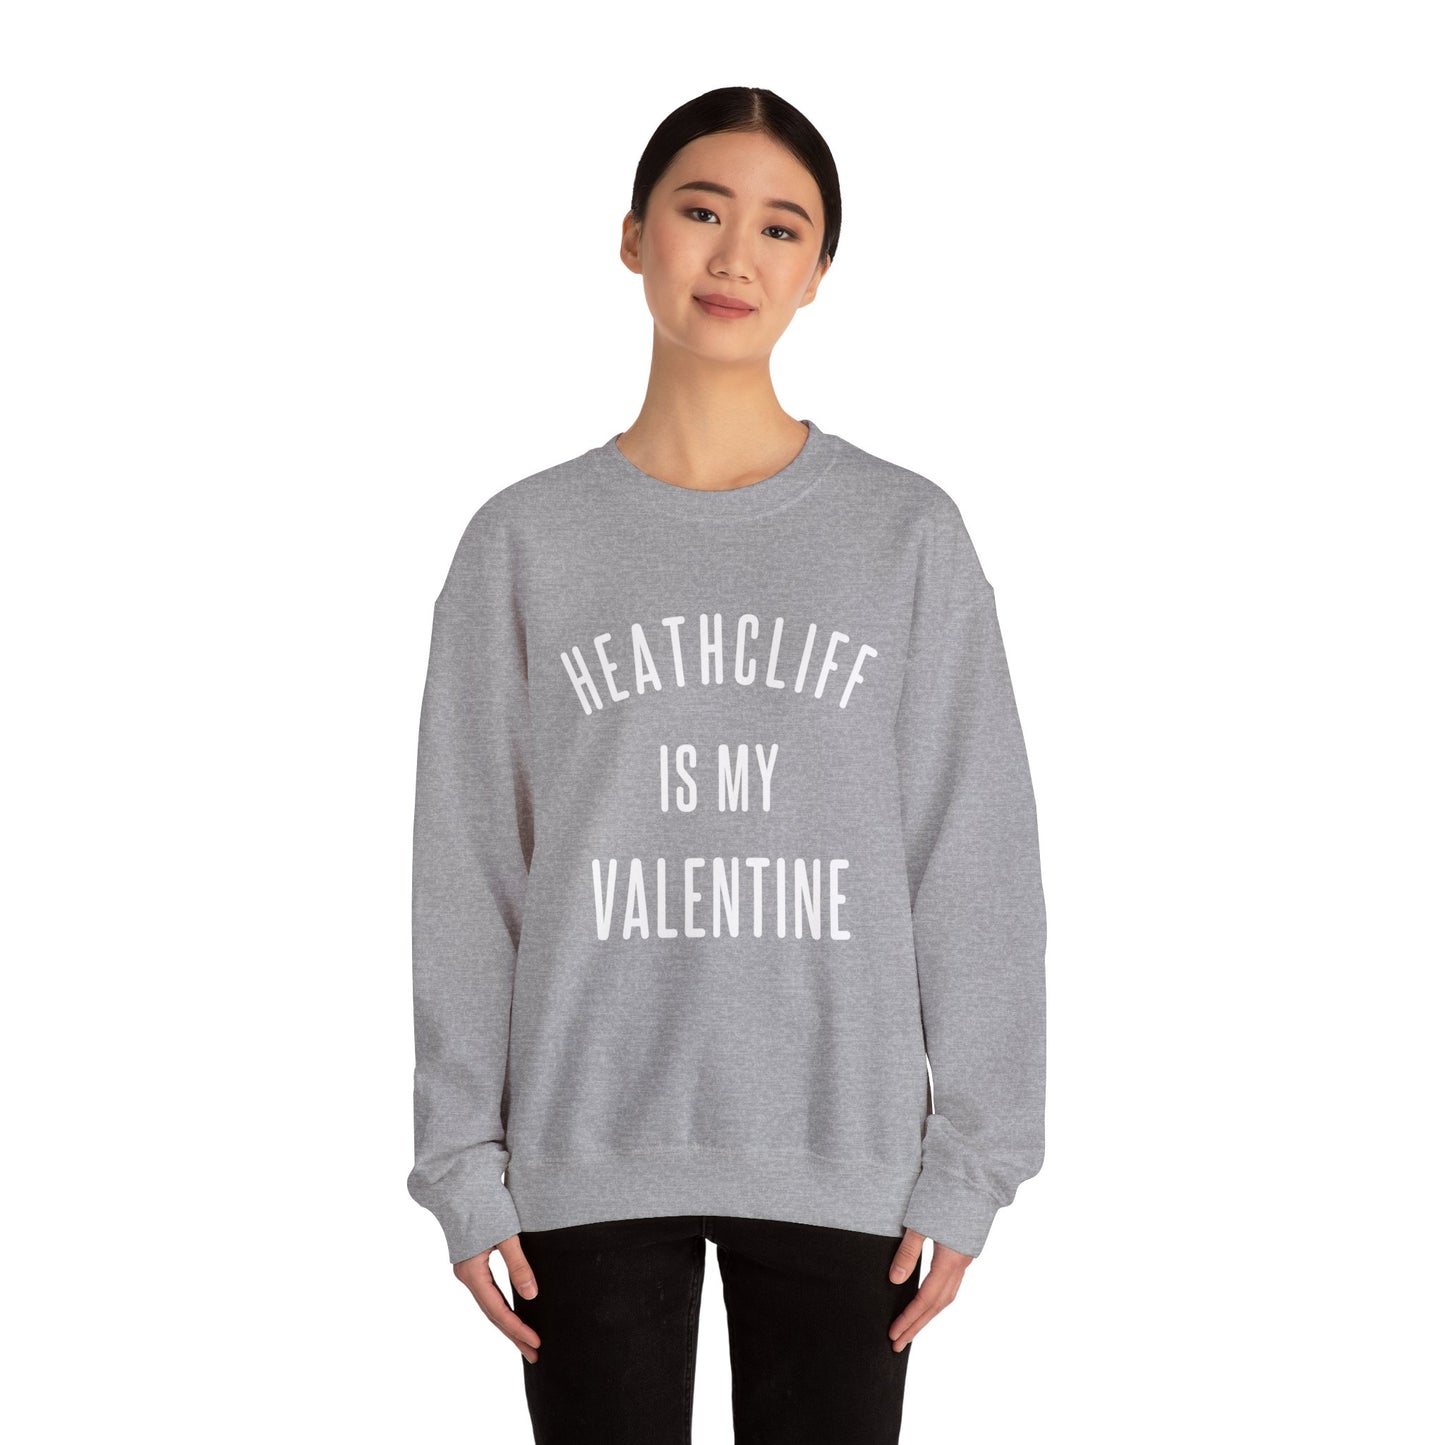 Heathcliff is my Valentine Crewneck Sweatshirt